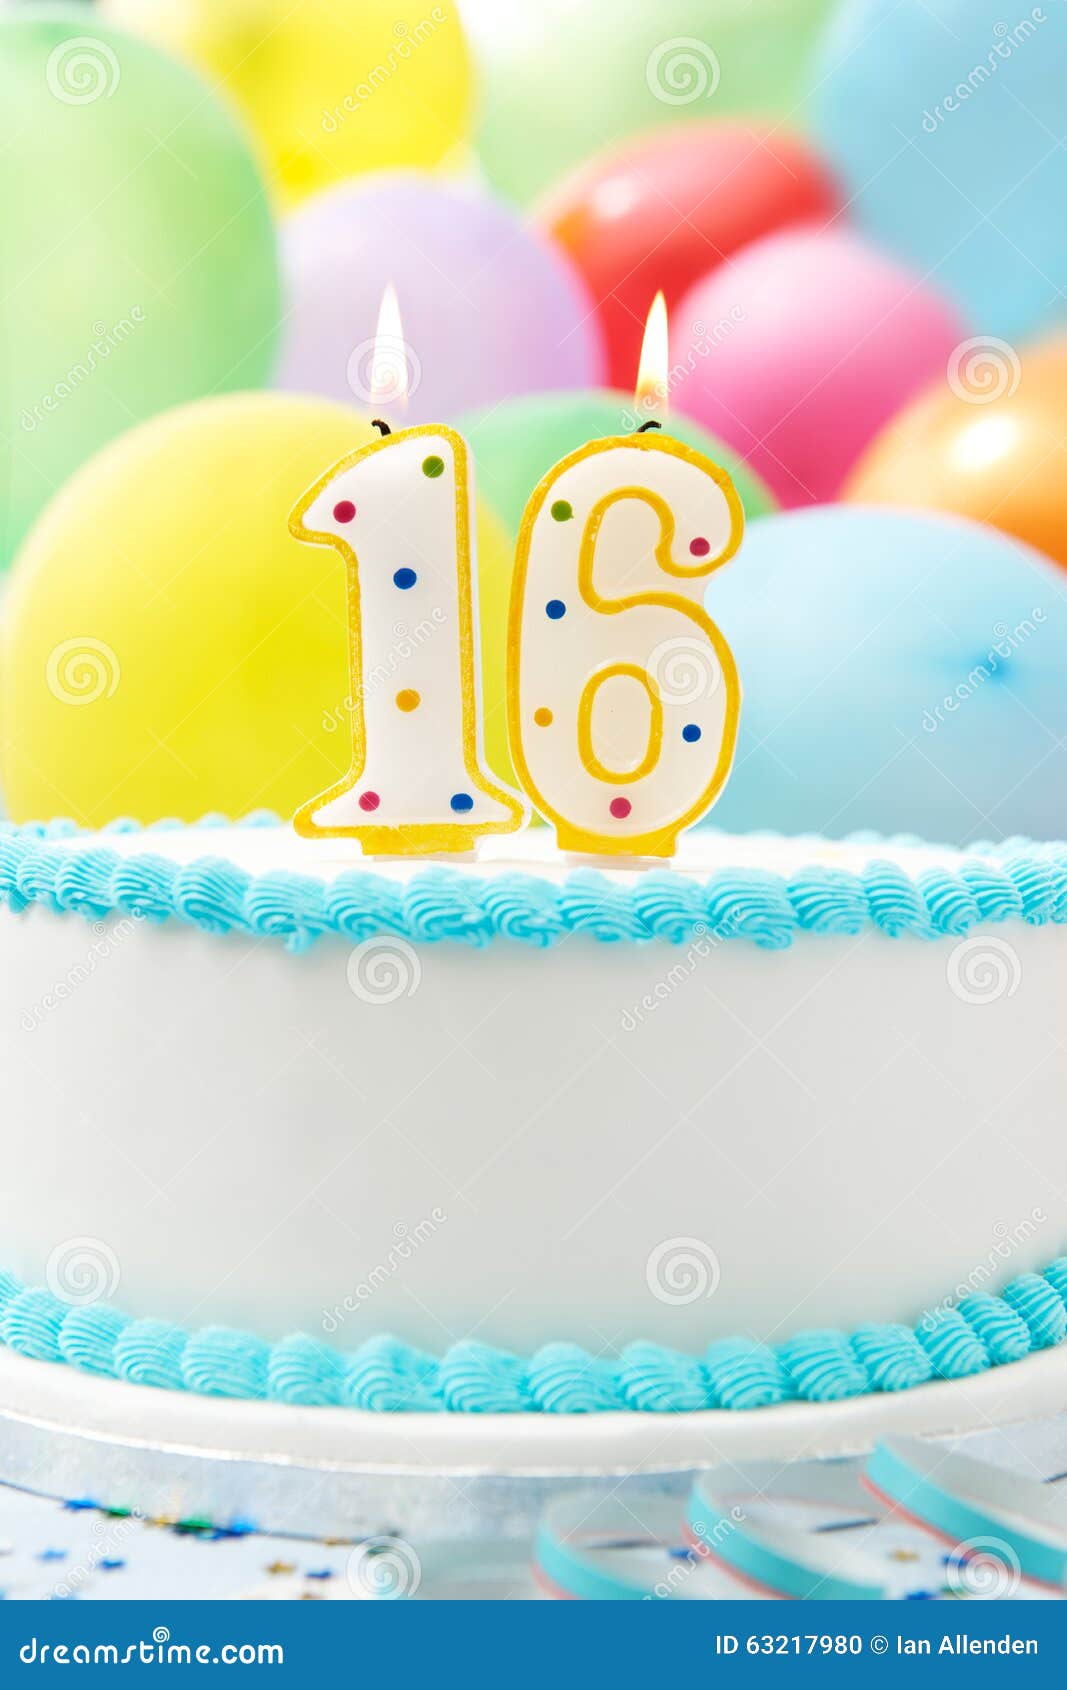 Rose Gold 16 Geburtstag Kerzen Kuchen Nummer Kerzen Alles Gute zum Geburtstag Kuchen Topper Dekoration für Geburtstag Party Hochzeit Jahrestag Feier Lieferungen